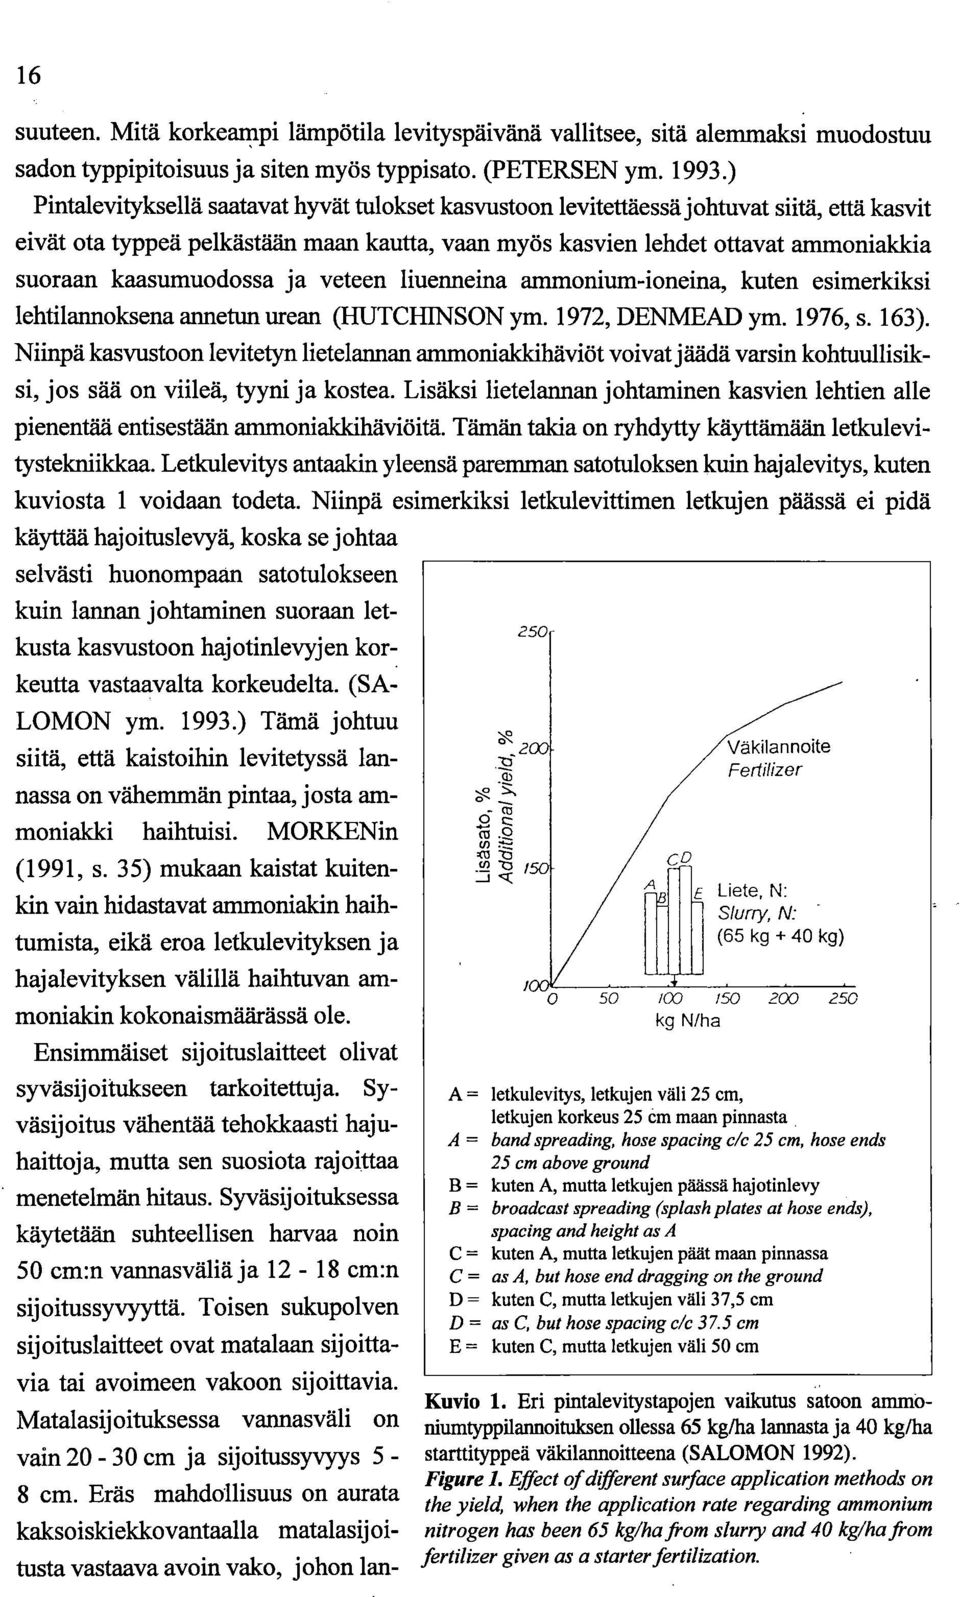 kaasumuodossa ja veteen liuermeina ammonium-ioneina, kuten esimerkiksi lehtilarmoksena annetun urean (HUTCHINSON ym. 1972, DENMEAD ym. 1976, s. 163).